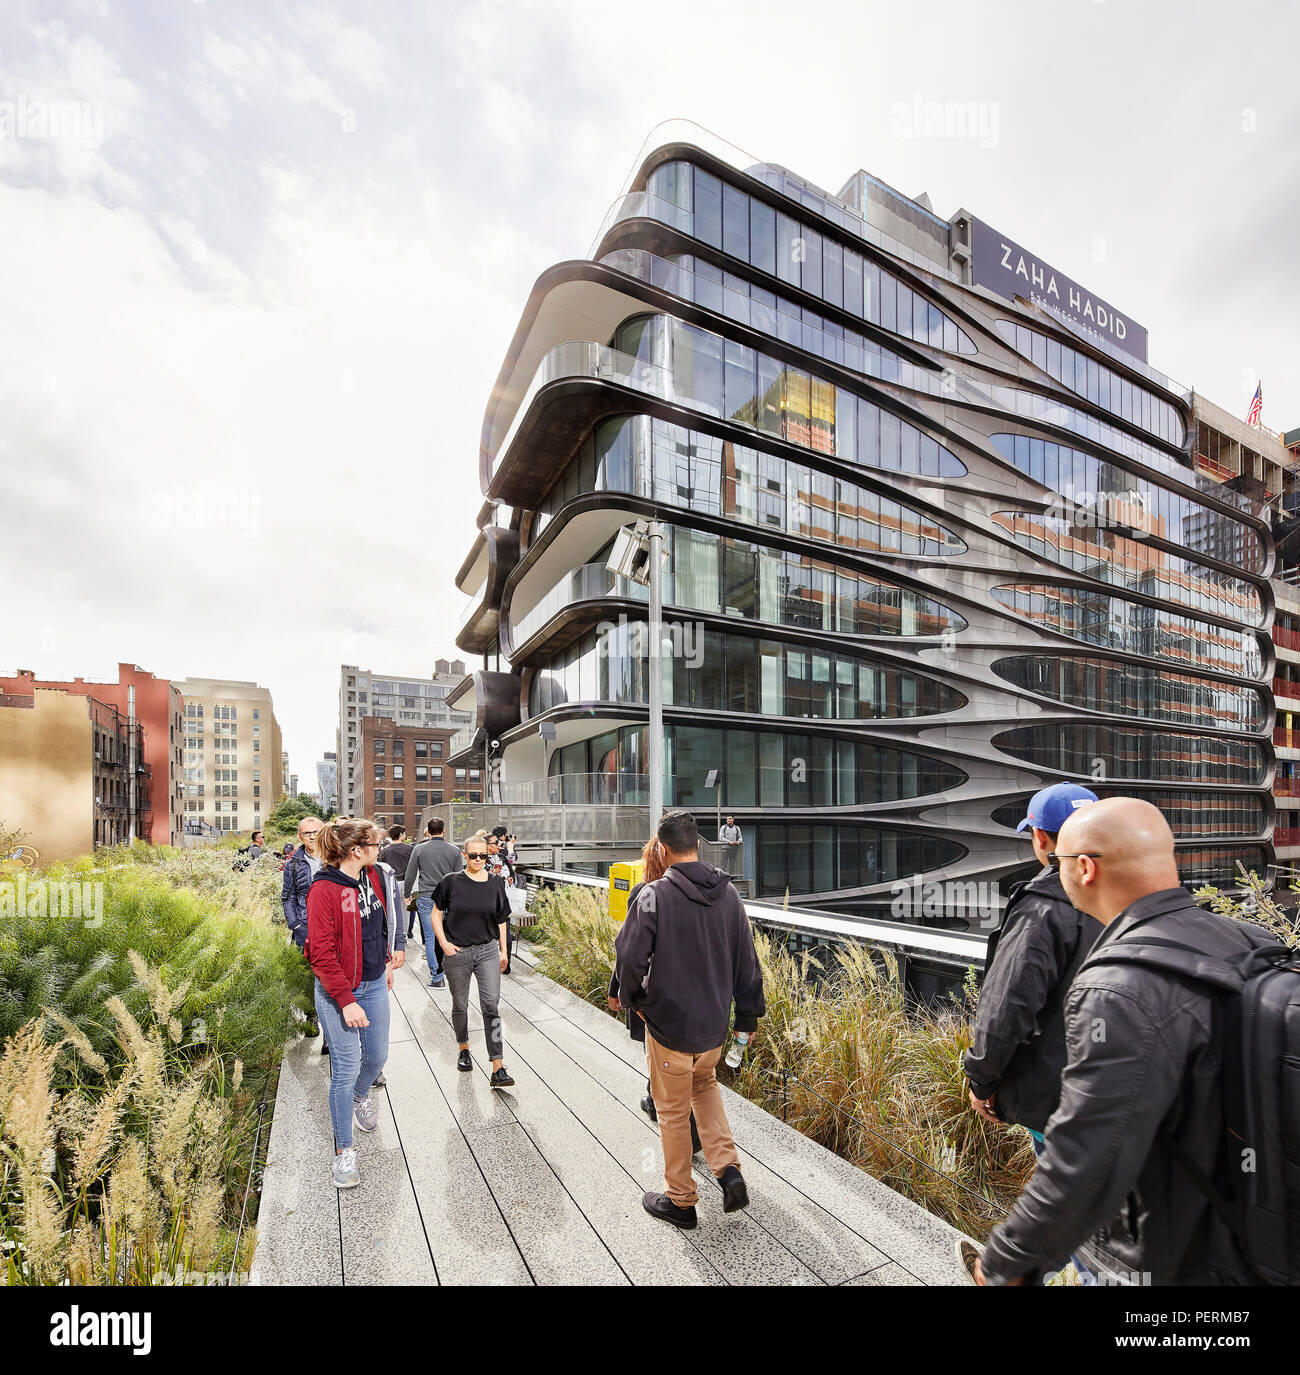 La façade extérieure, l'elevation de lignes. 520 West 28th Street, New York, United States. Architecte : Zaha Hadid Architects, 2017. Banque D'Images